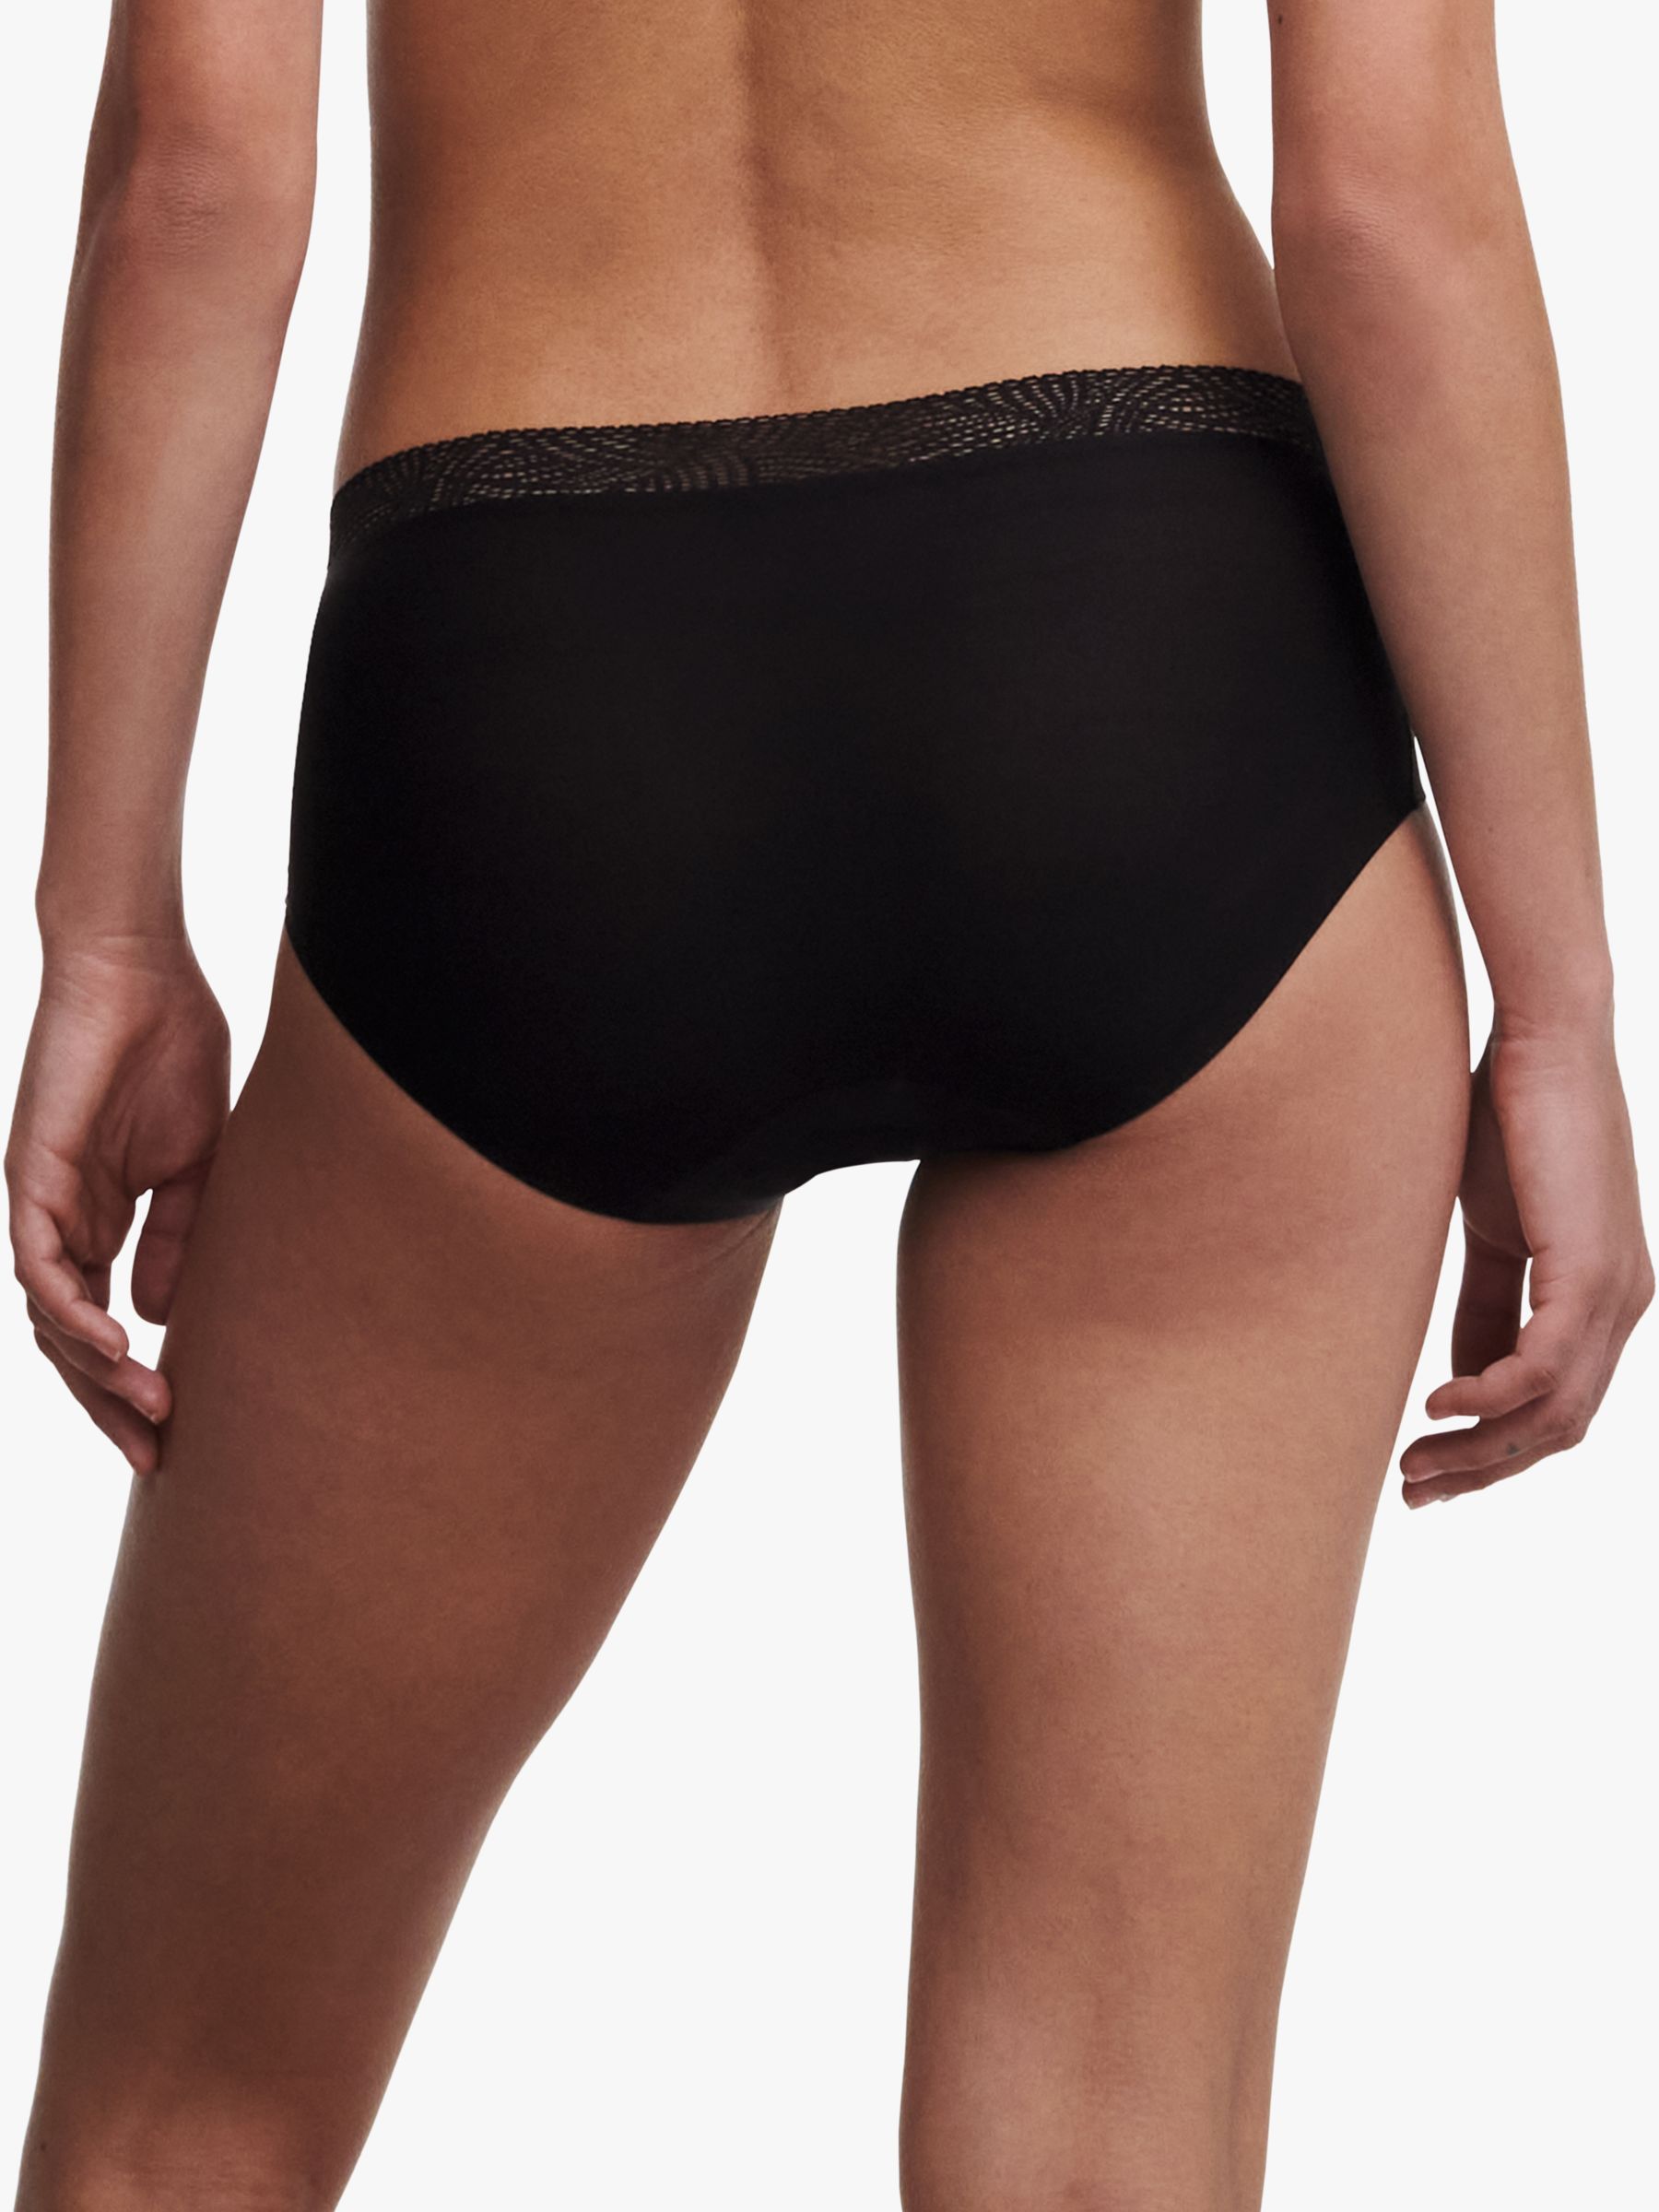 Buy F Fashiol.com Lace Shorts Underwear Yoga Shorts Stretch Safety